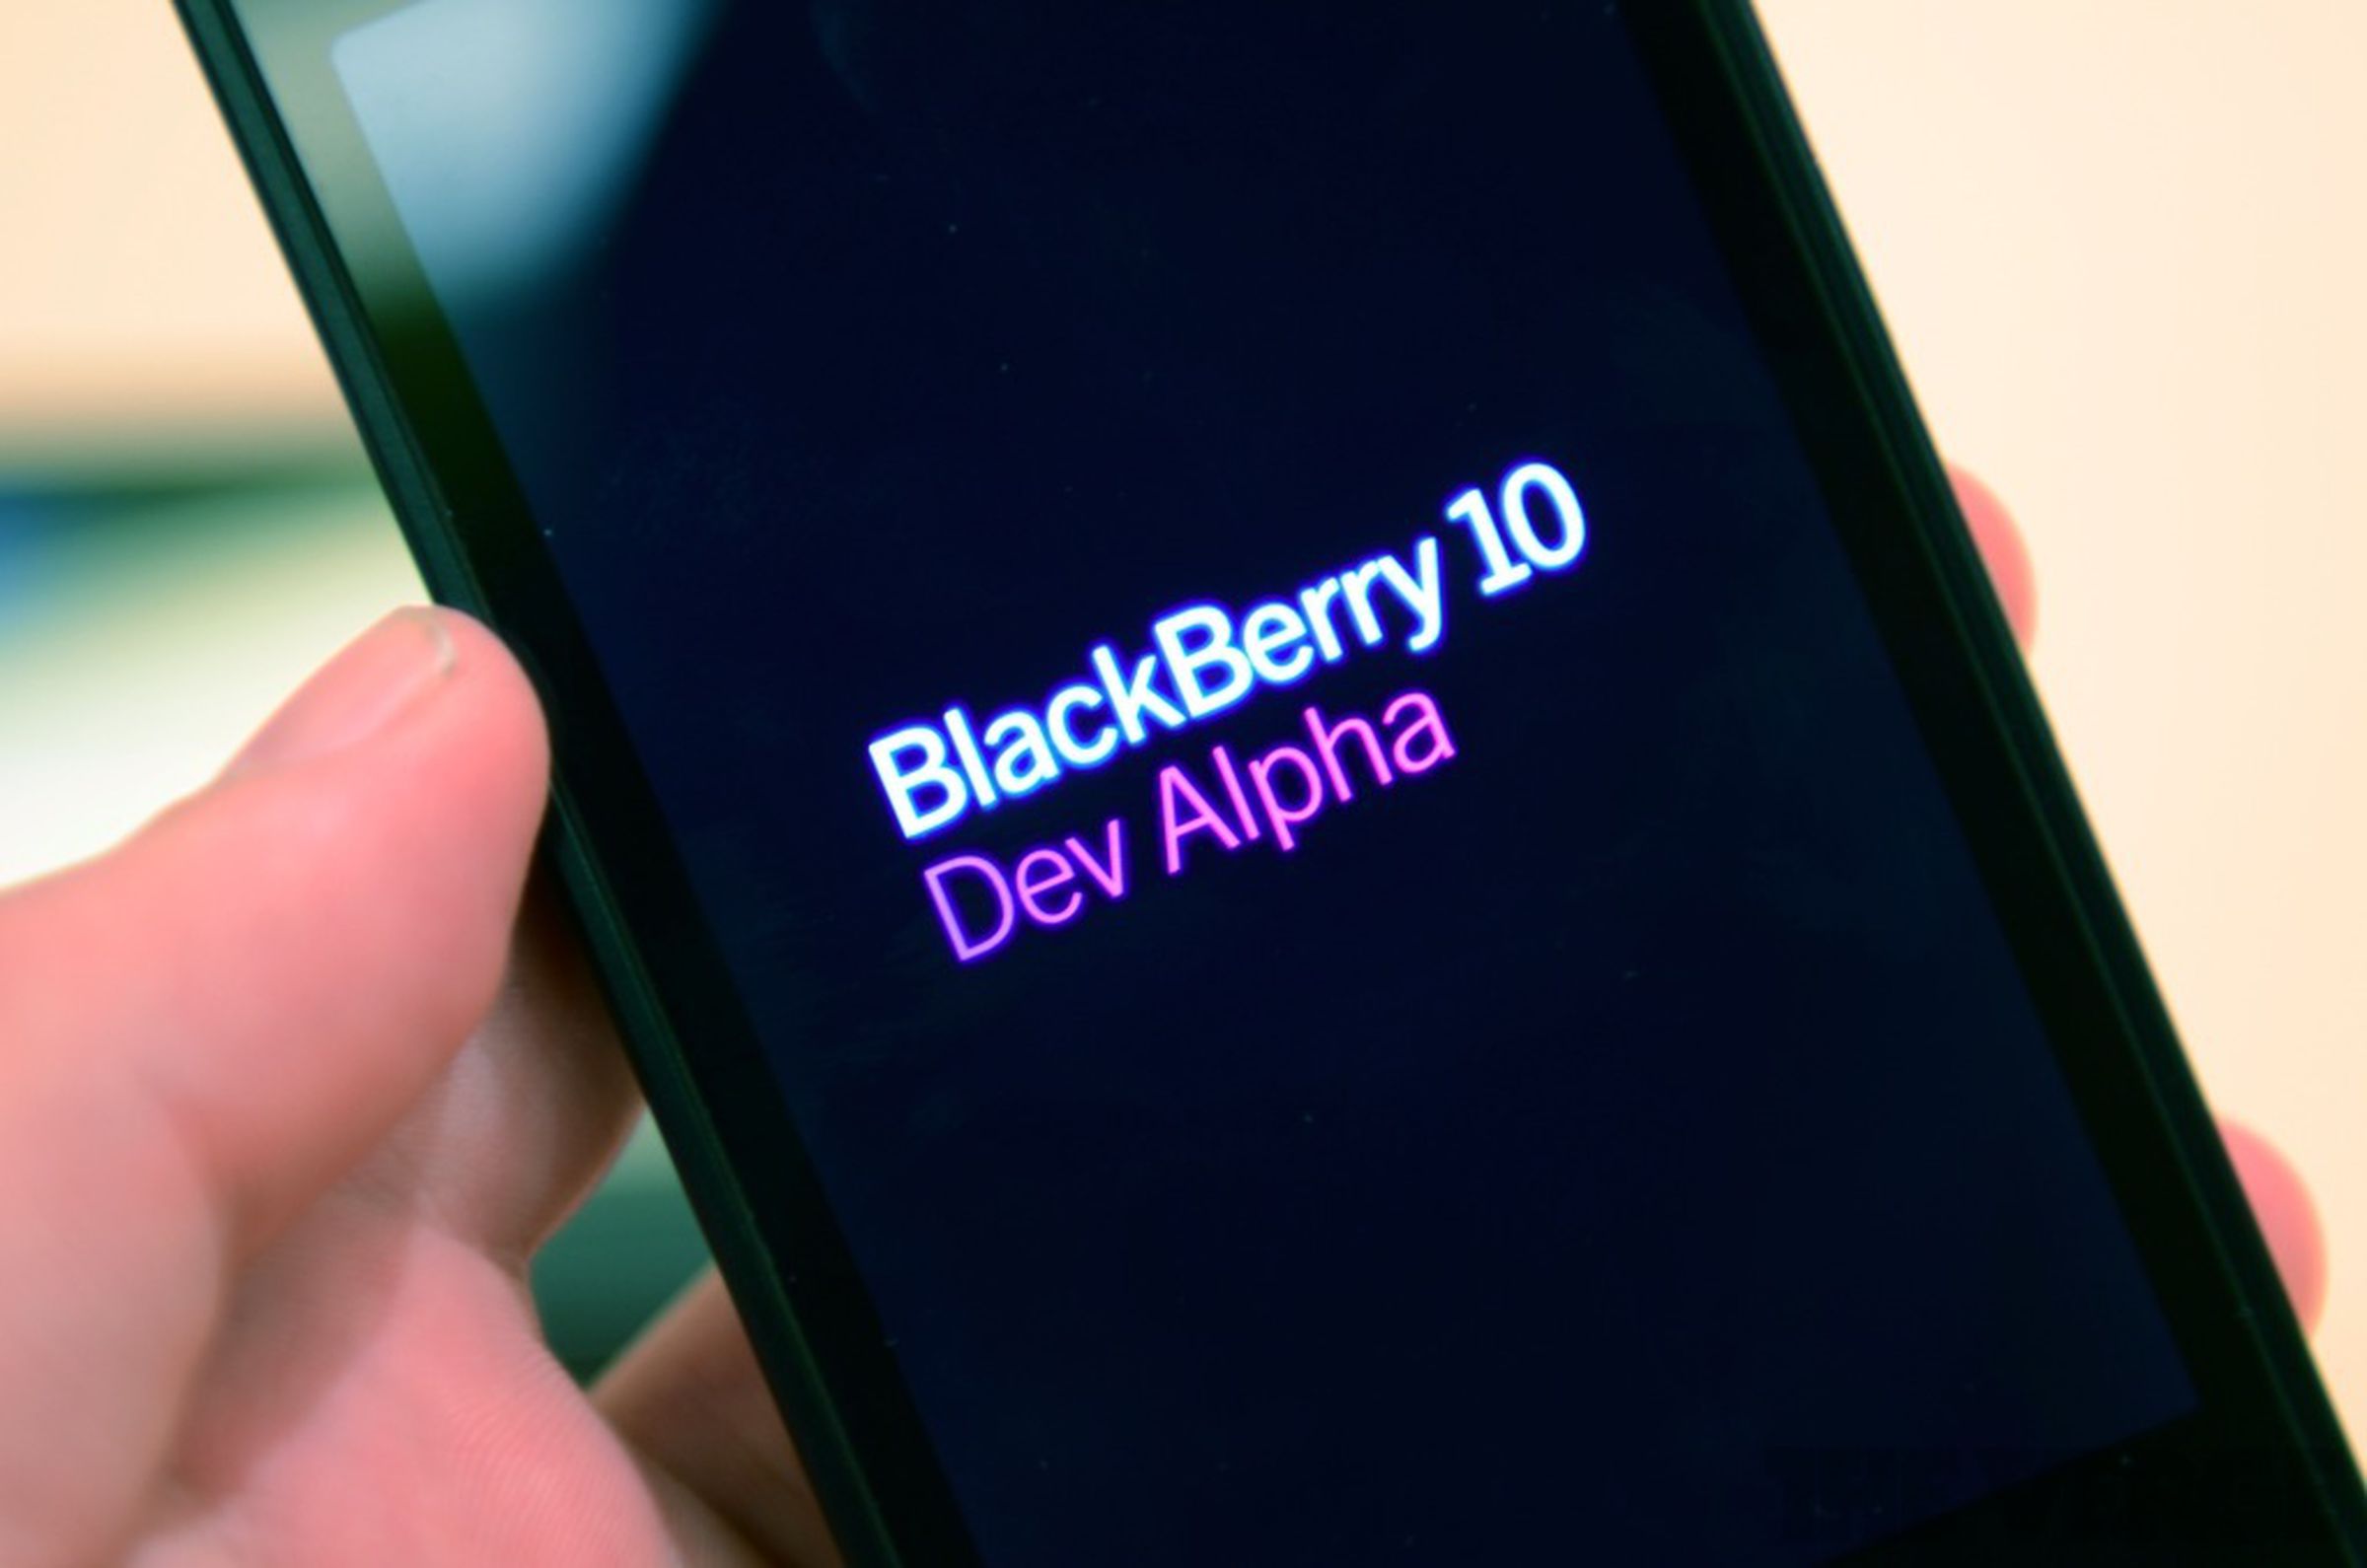 BlackBerry 10 Dev Alpha developer testing device hands-on pictures